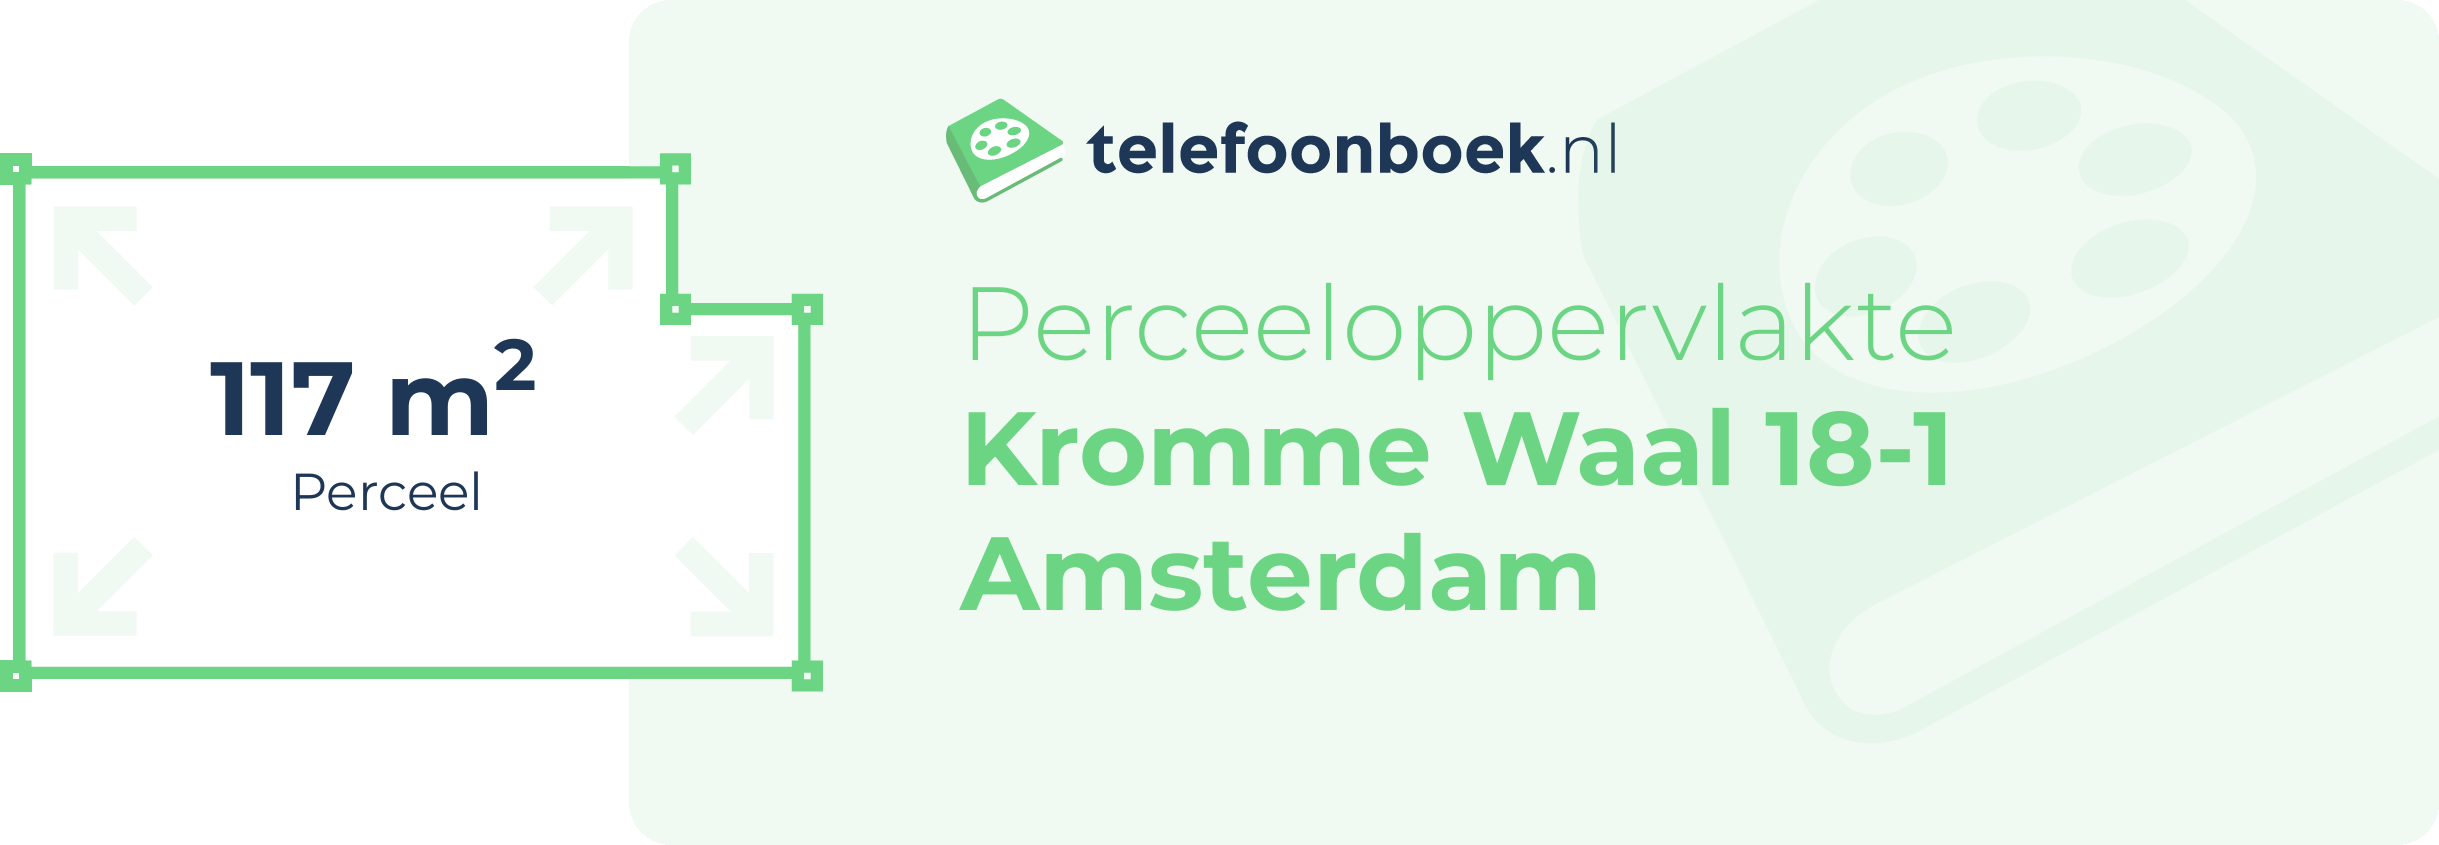 Perceeloppervlakte Kromme Waal 18-1 Amsterdam